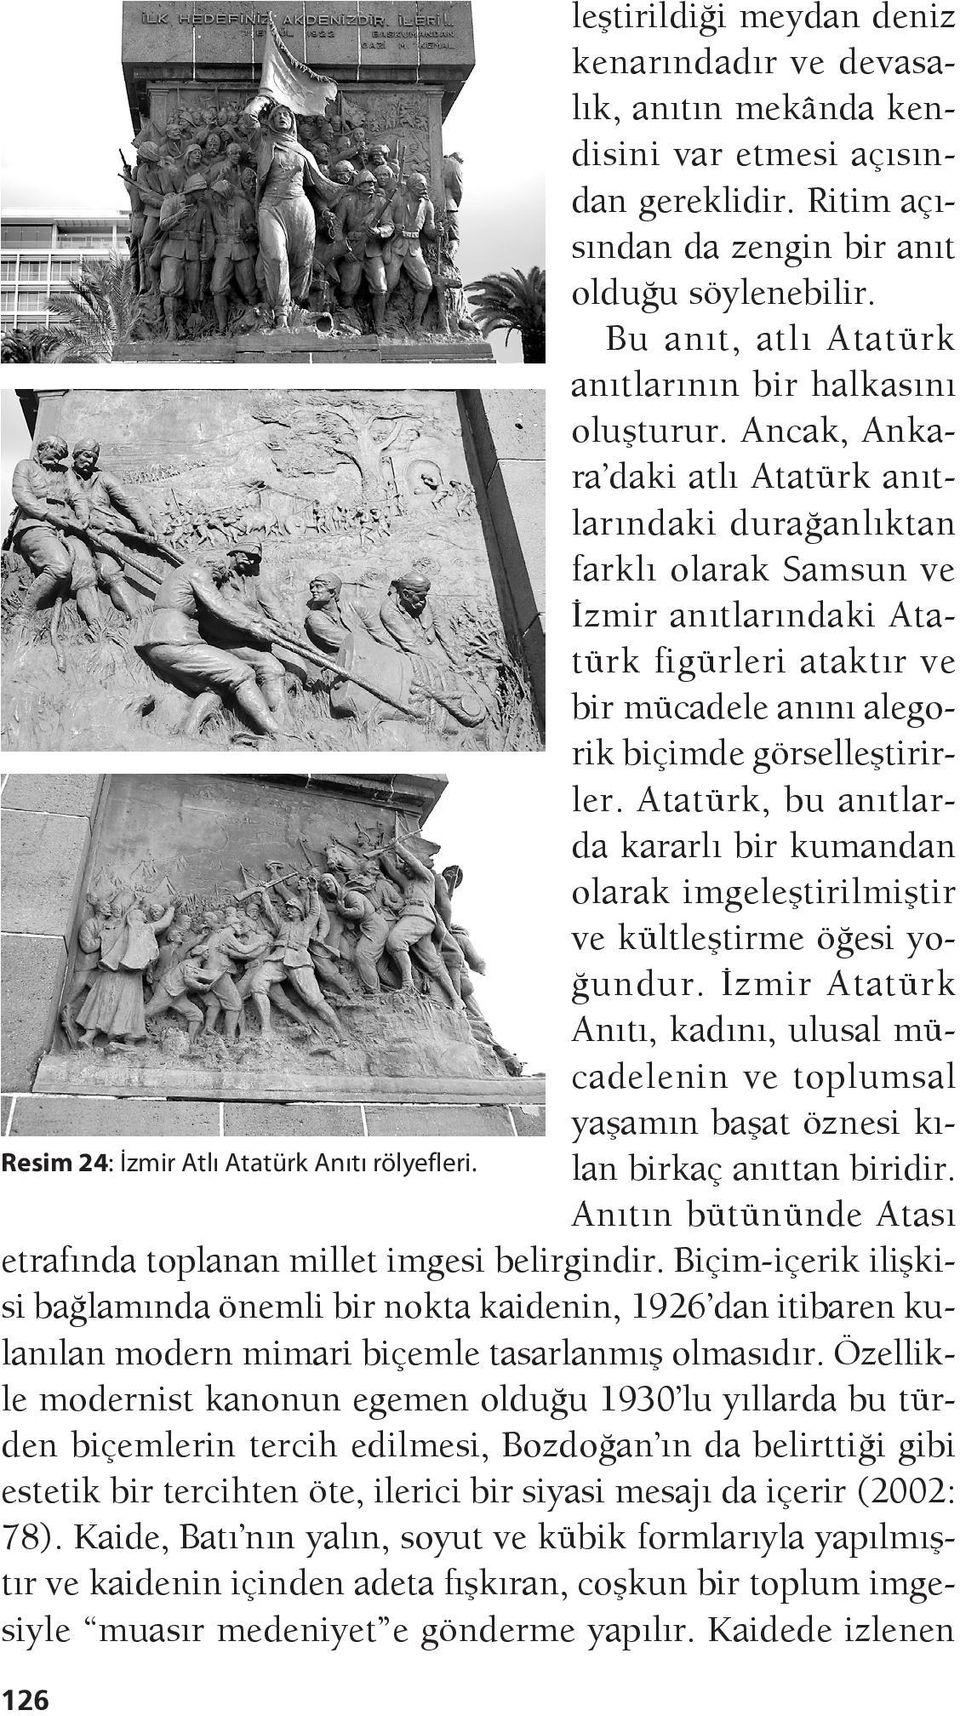 Ancak, An kara daki atlı Atatürk anıtlarındaki durağanlıktan farklı olarak Samsun ve İzmir anıtlarındaki Atatürk figürleri ataktır ve bir mücadele anını alegorik biçimde görselleştirirler.